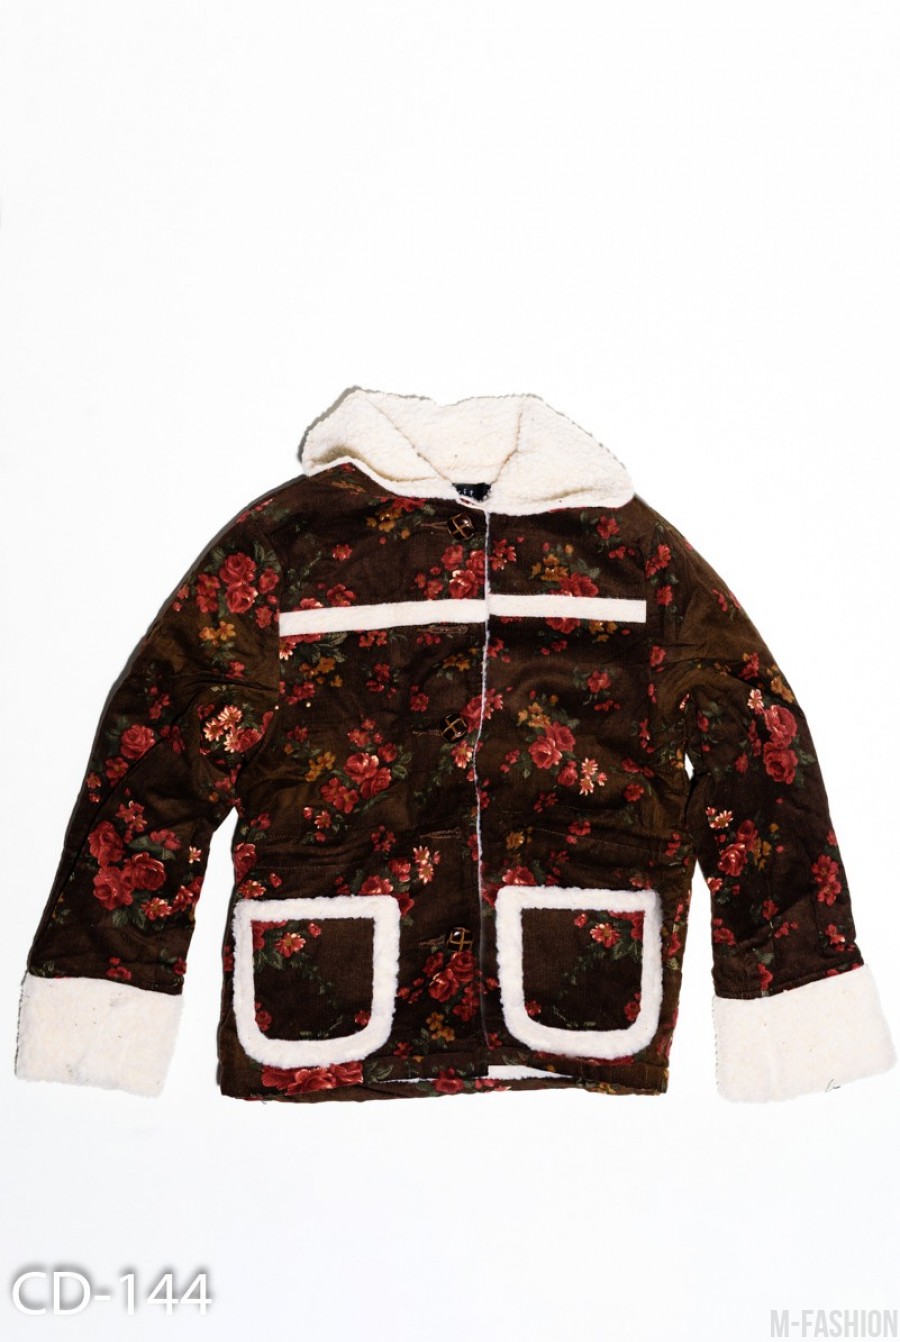 Коричневая вельветовая куртка на меху с цветочным принтом - Фото 1